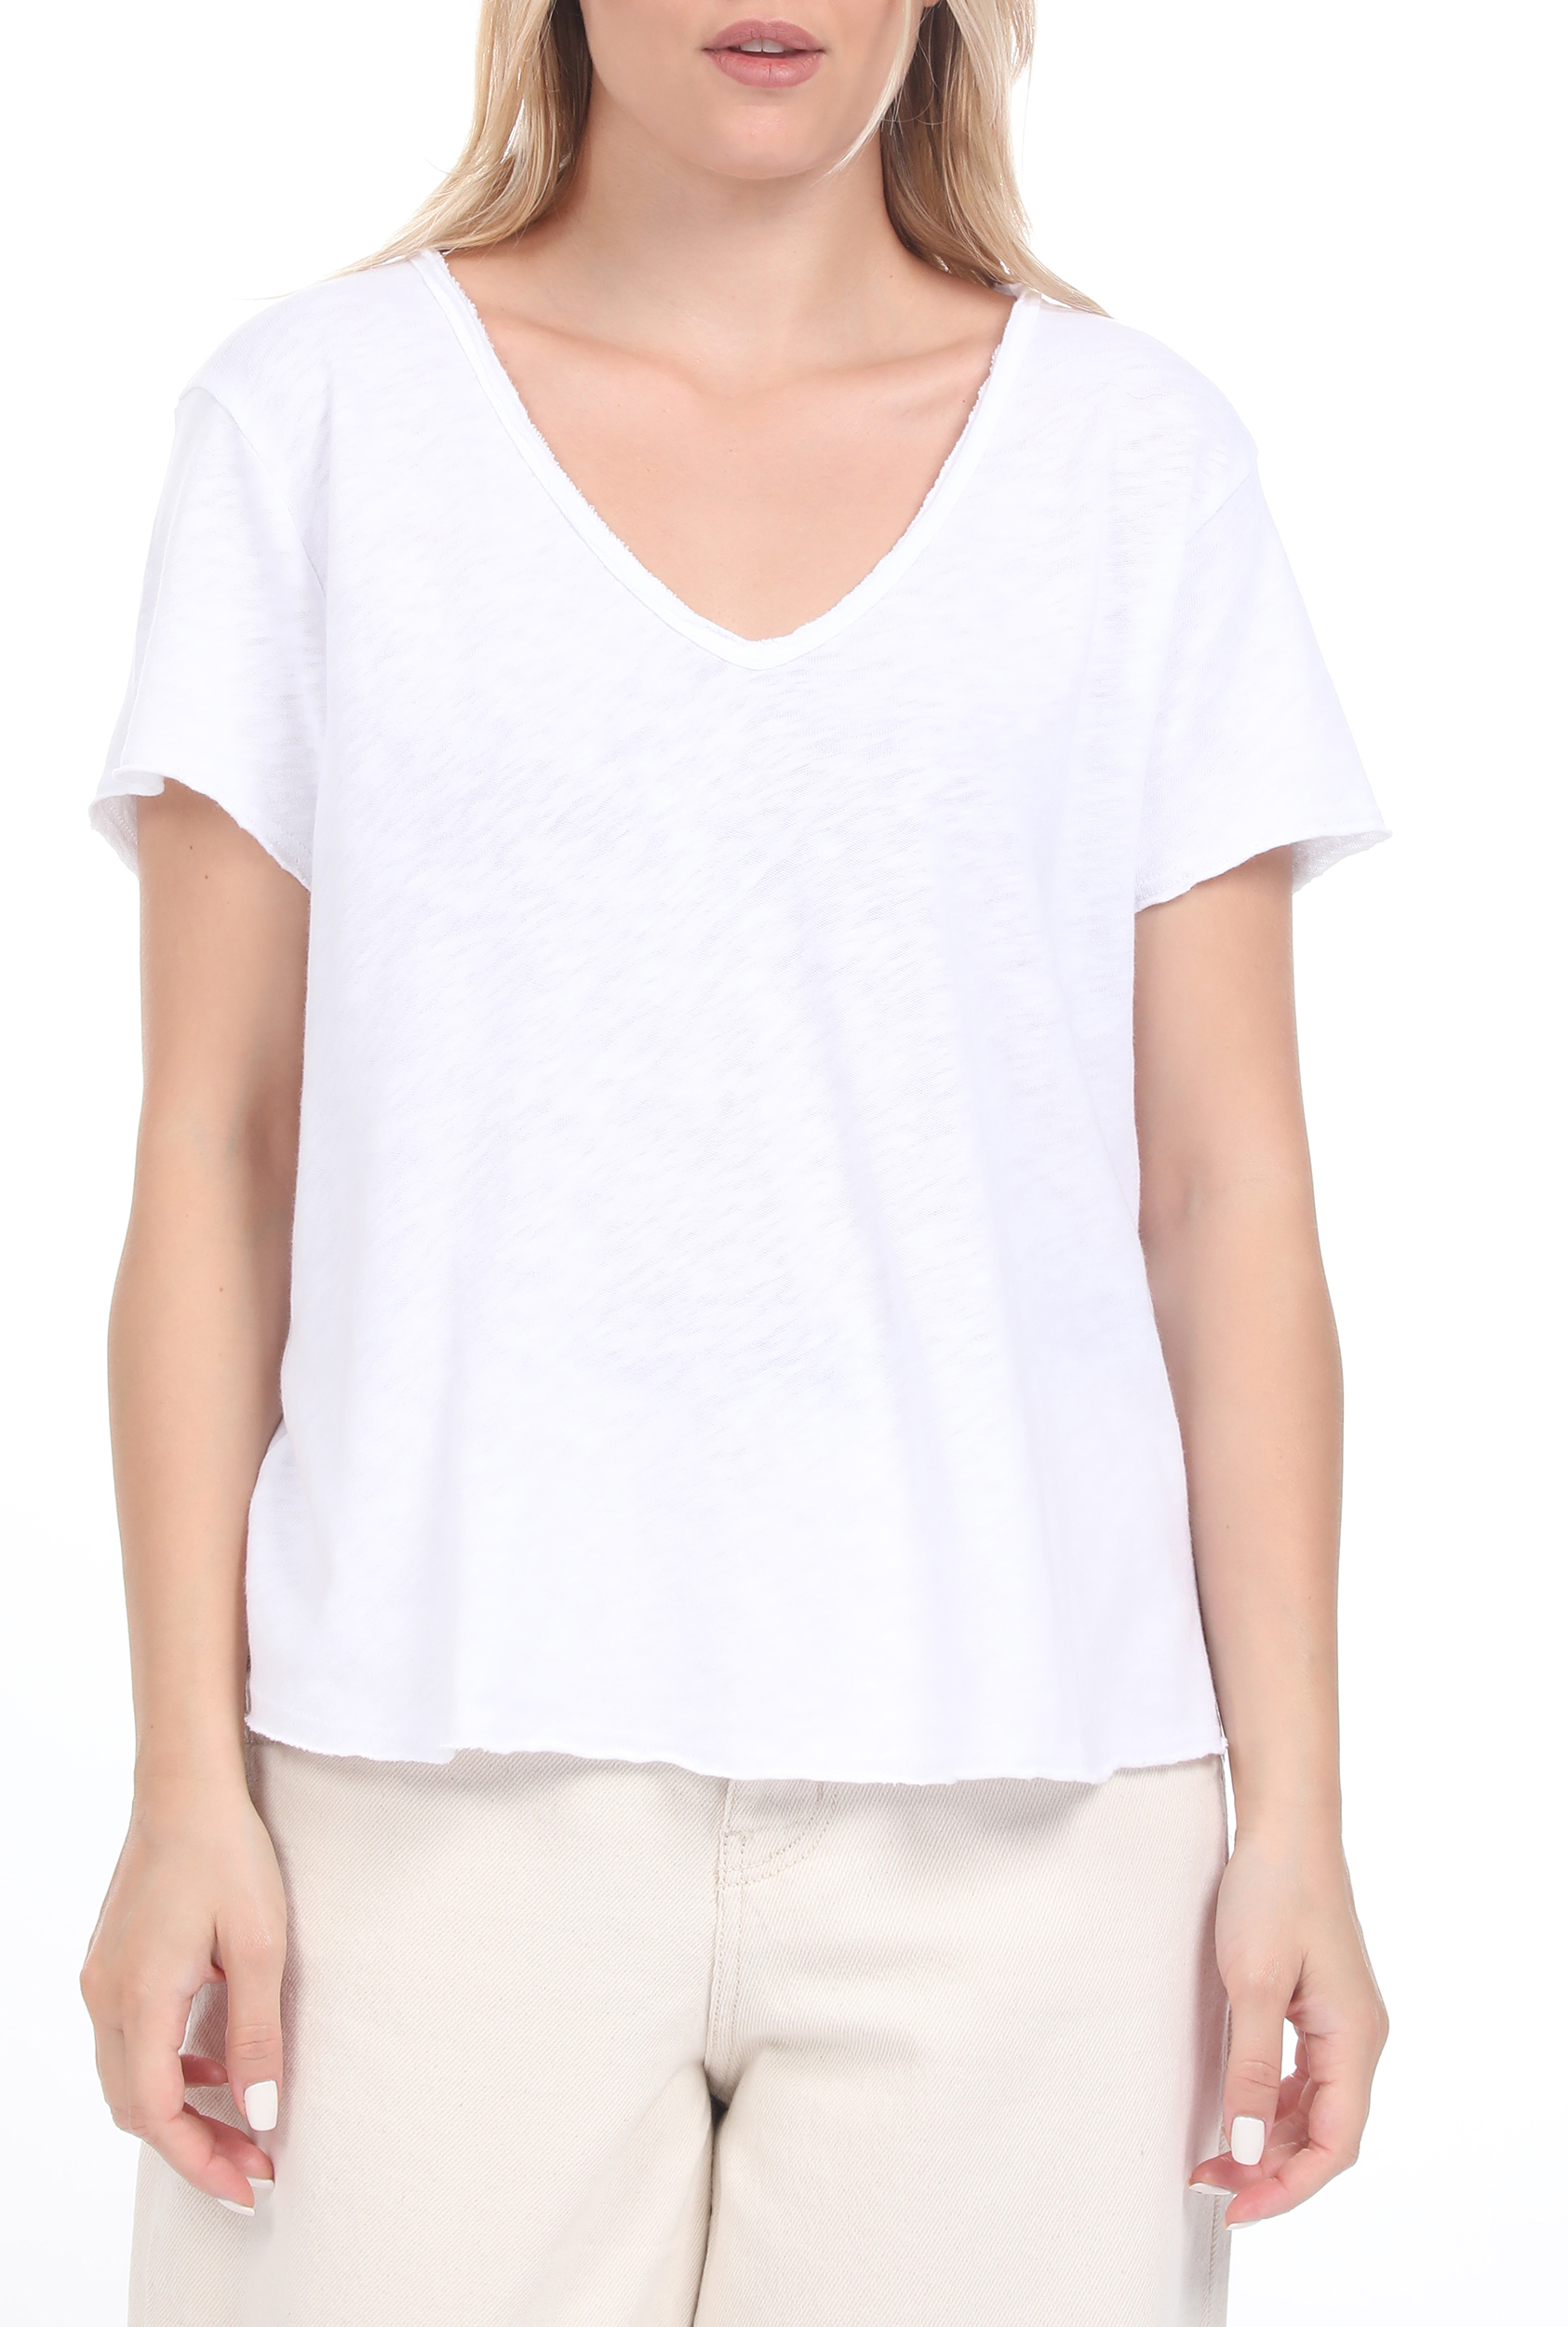 Γυναικεία/Ρούχα/Μπλούζες/Κοντομάνικες AMERICAN VINTAGE - Γυναικεία μπλούζα AMERICAN VINTAGE λευκή